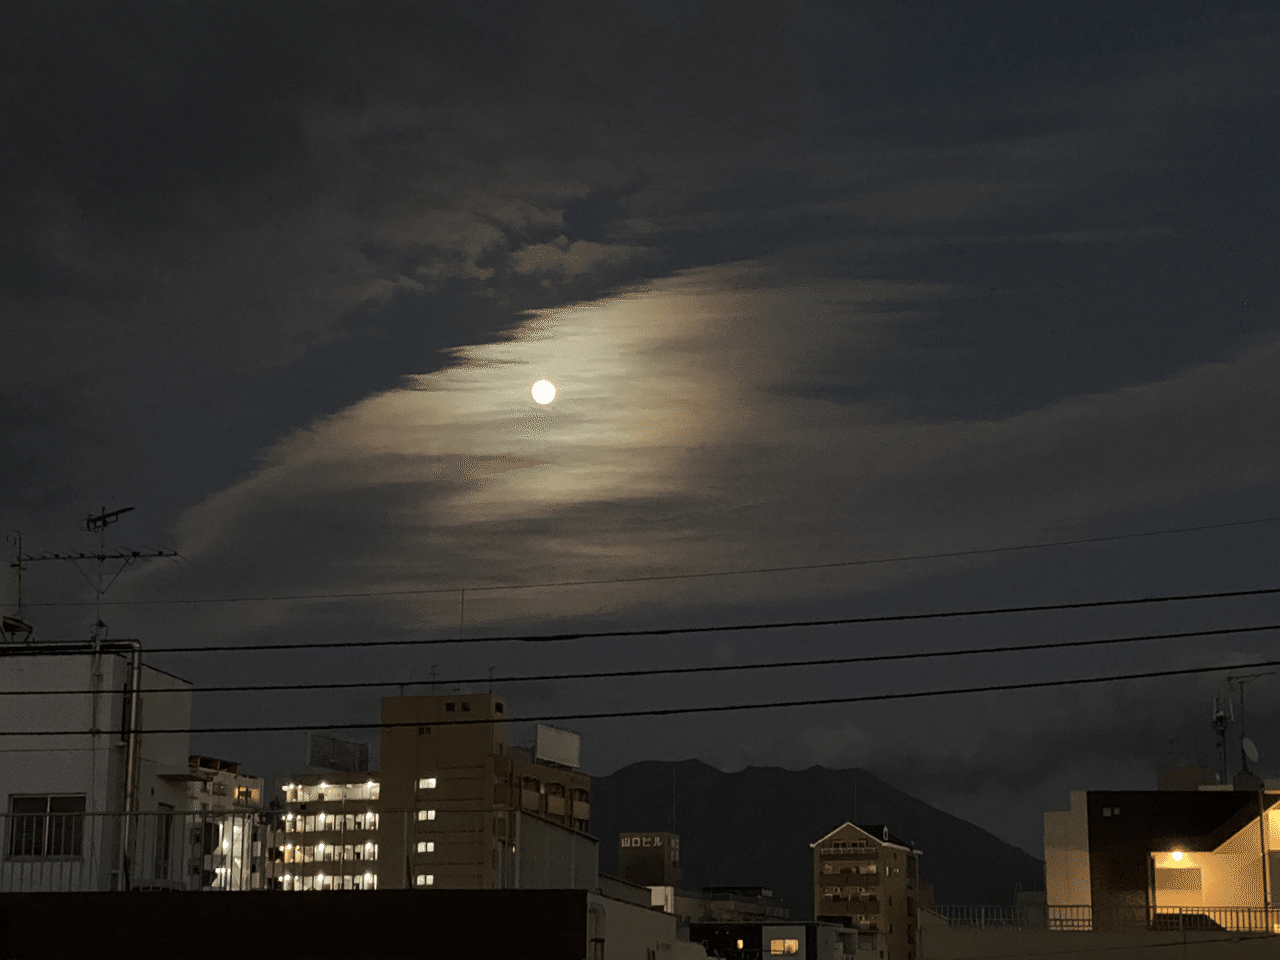 桜島 小望月と桜島 と と 小望月 桜島 雲 いとをかし 今夜の月は 小望月 こもちづき 満月 望月 の前夜からきているそうです 別名 畿望 きぼう 畿は 近い の意味だそうです いちにさん 鹿児島の朝活めざましグラレコ道場